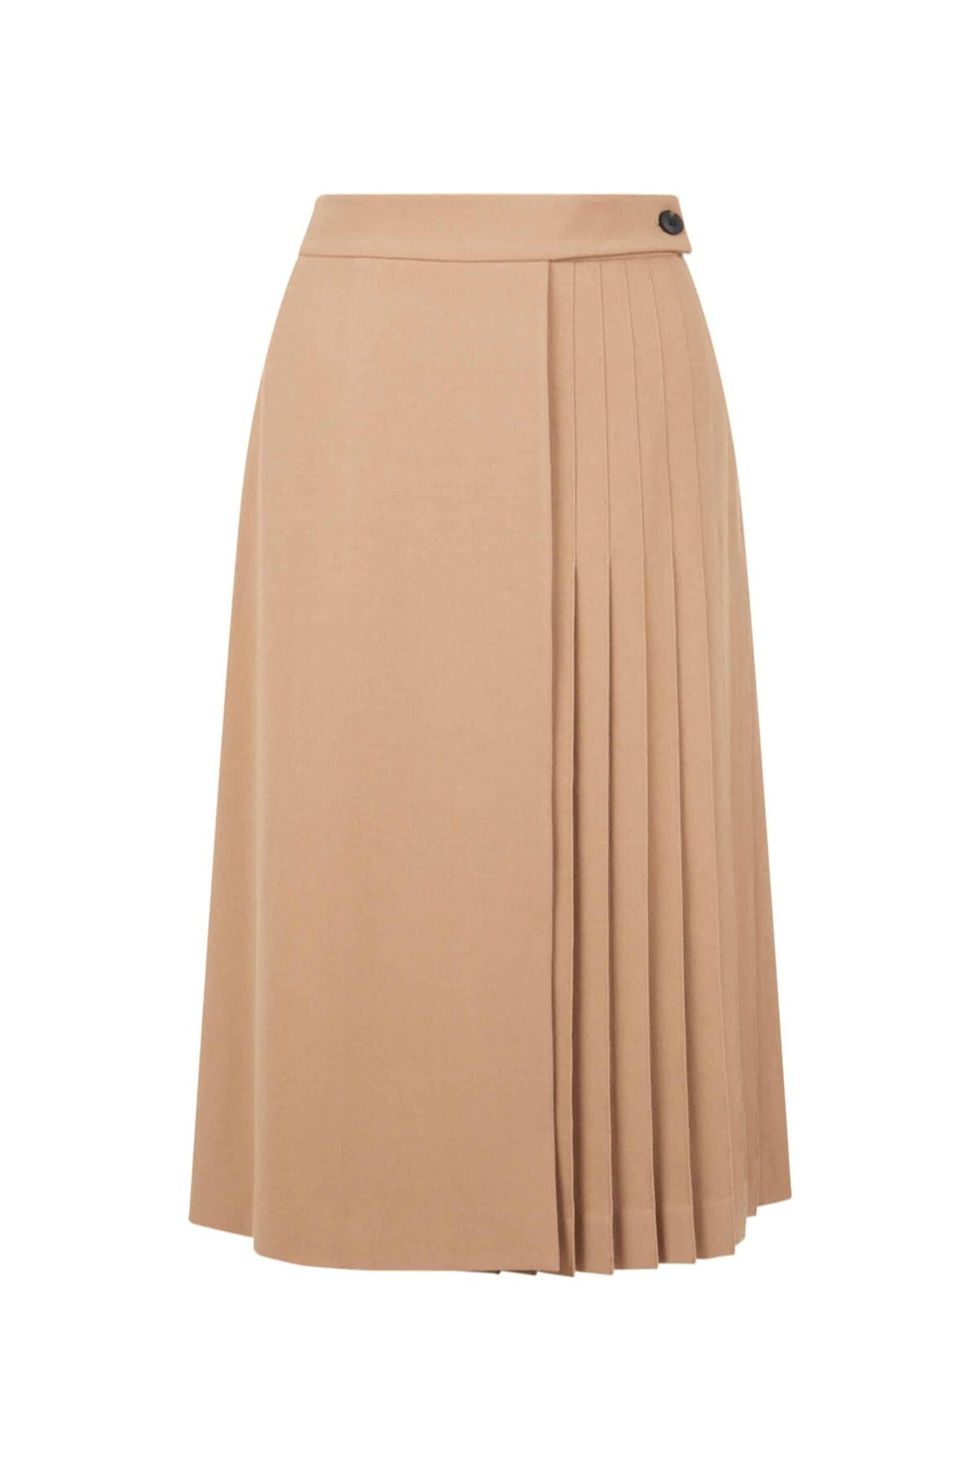 Pleasted Midi Skirt, £159